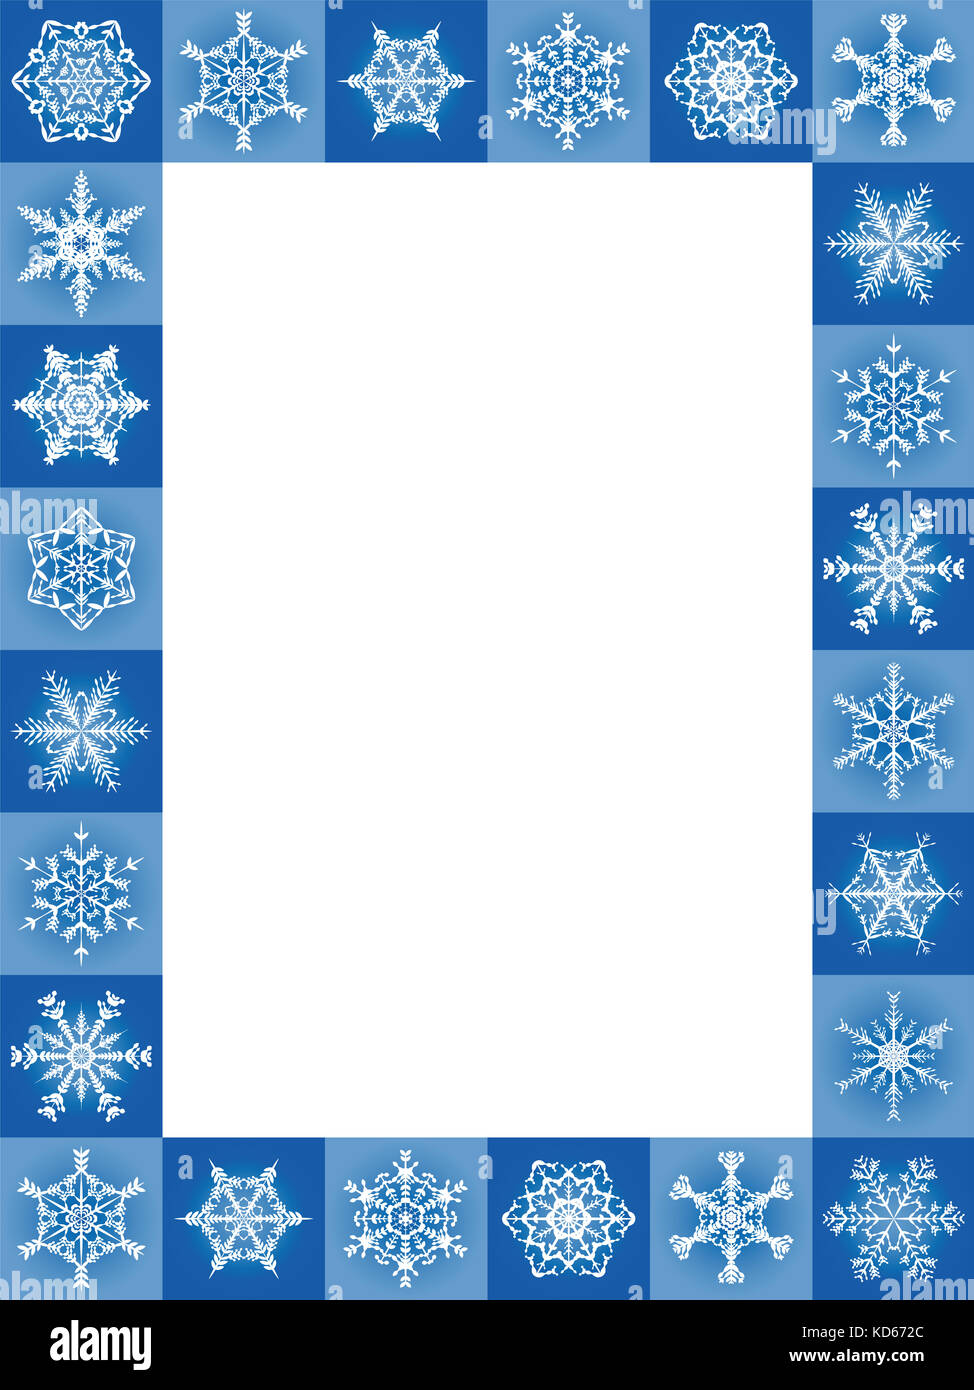 Fiocchi di neve di natale blu telaio formato verticale - venti-quattro gradevoli bellissime mattonelle - illustrazione con carta bianca al centro per essere etichettati. Foto Stock